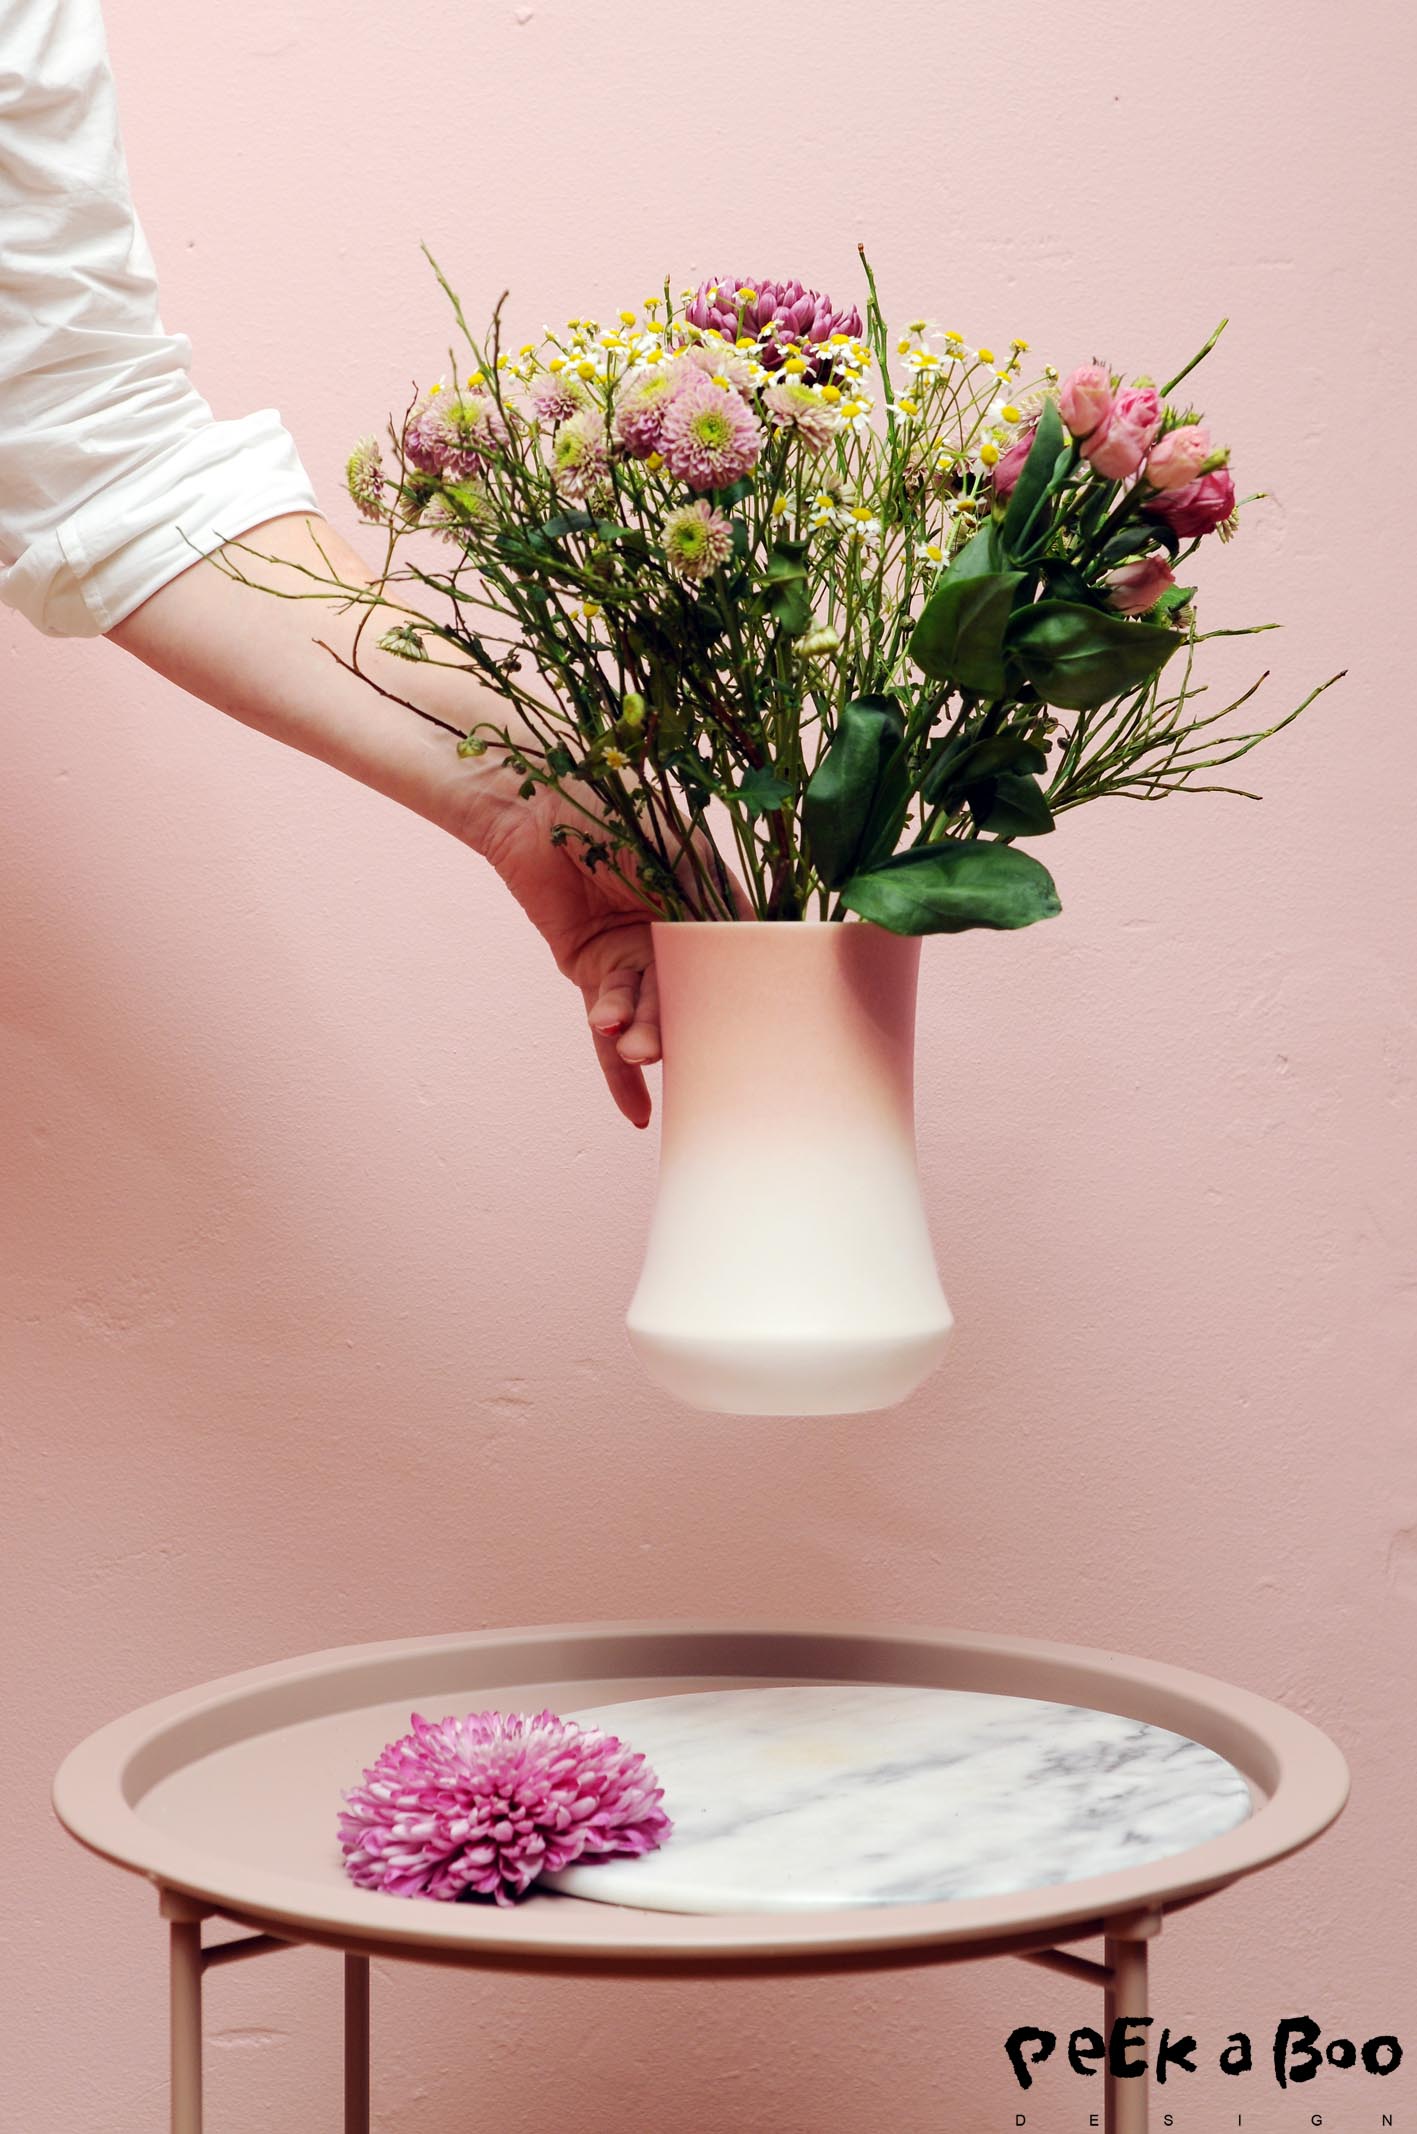 The Skala vase designed and made by Kristina Vildersboll.